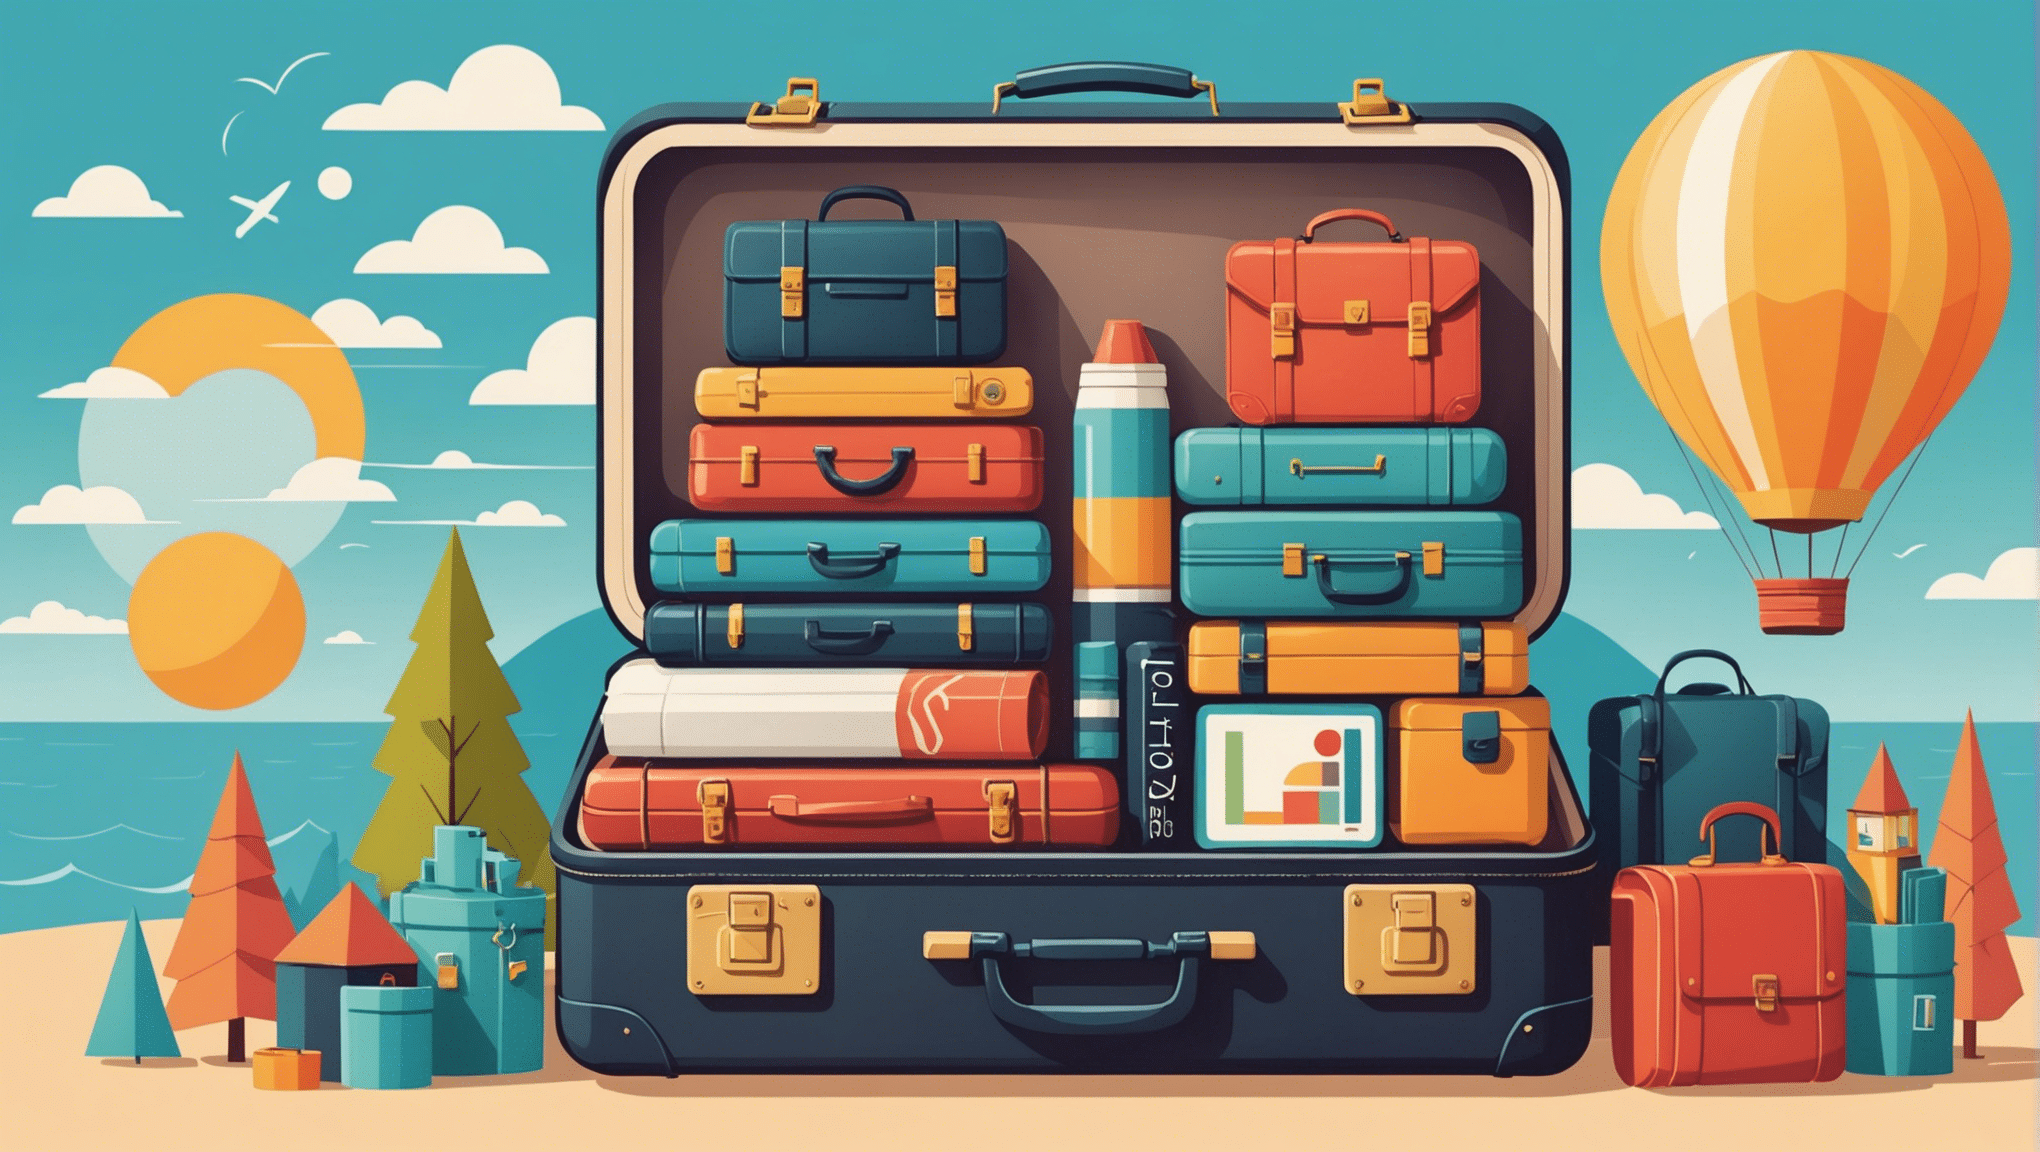 découvrez comment voyager léger en apprenant à faire sa valise comme un professionnel. conseils, astuces et techniques pour optimiser l'espace et ne pas oublier l'essentiel lors de vos déplacements.